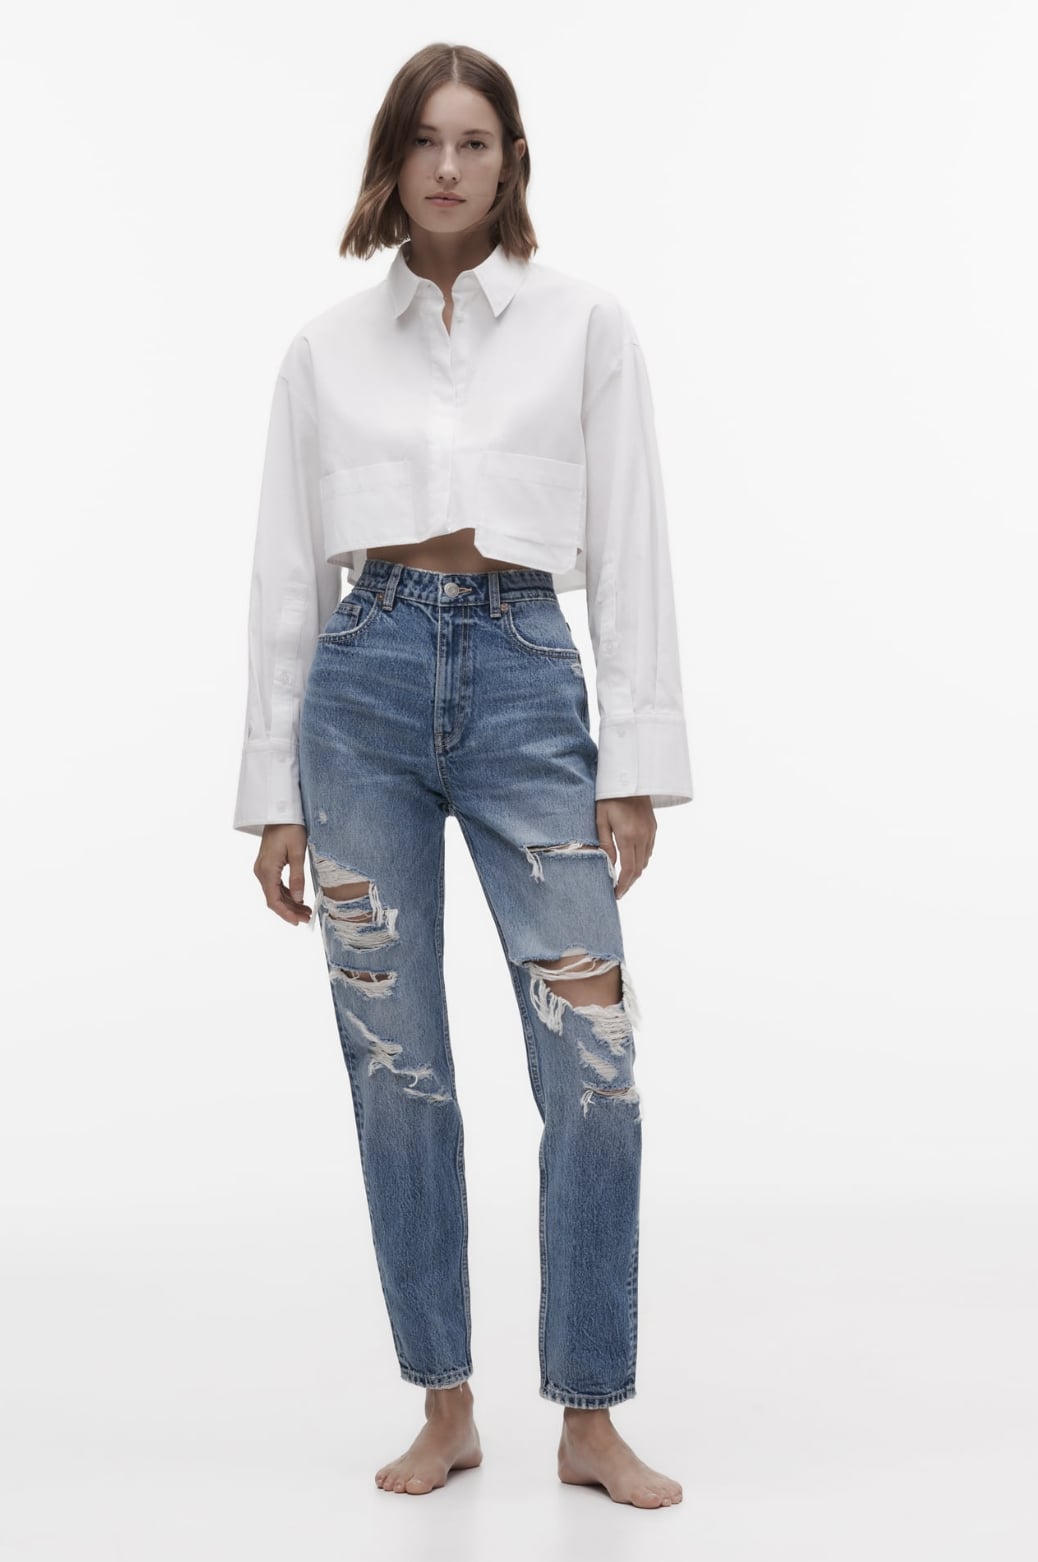 Zara - Zara Baggy Jeans on Designer Wardrobe